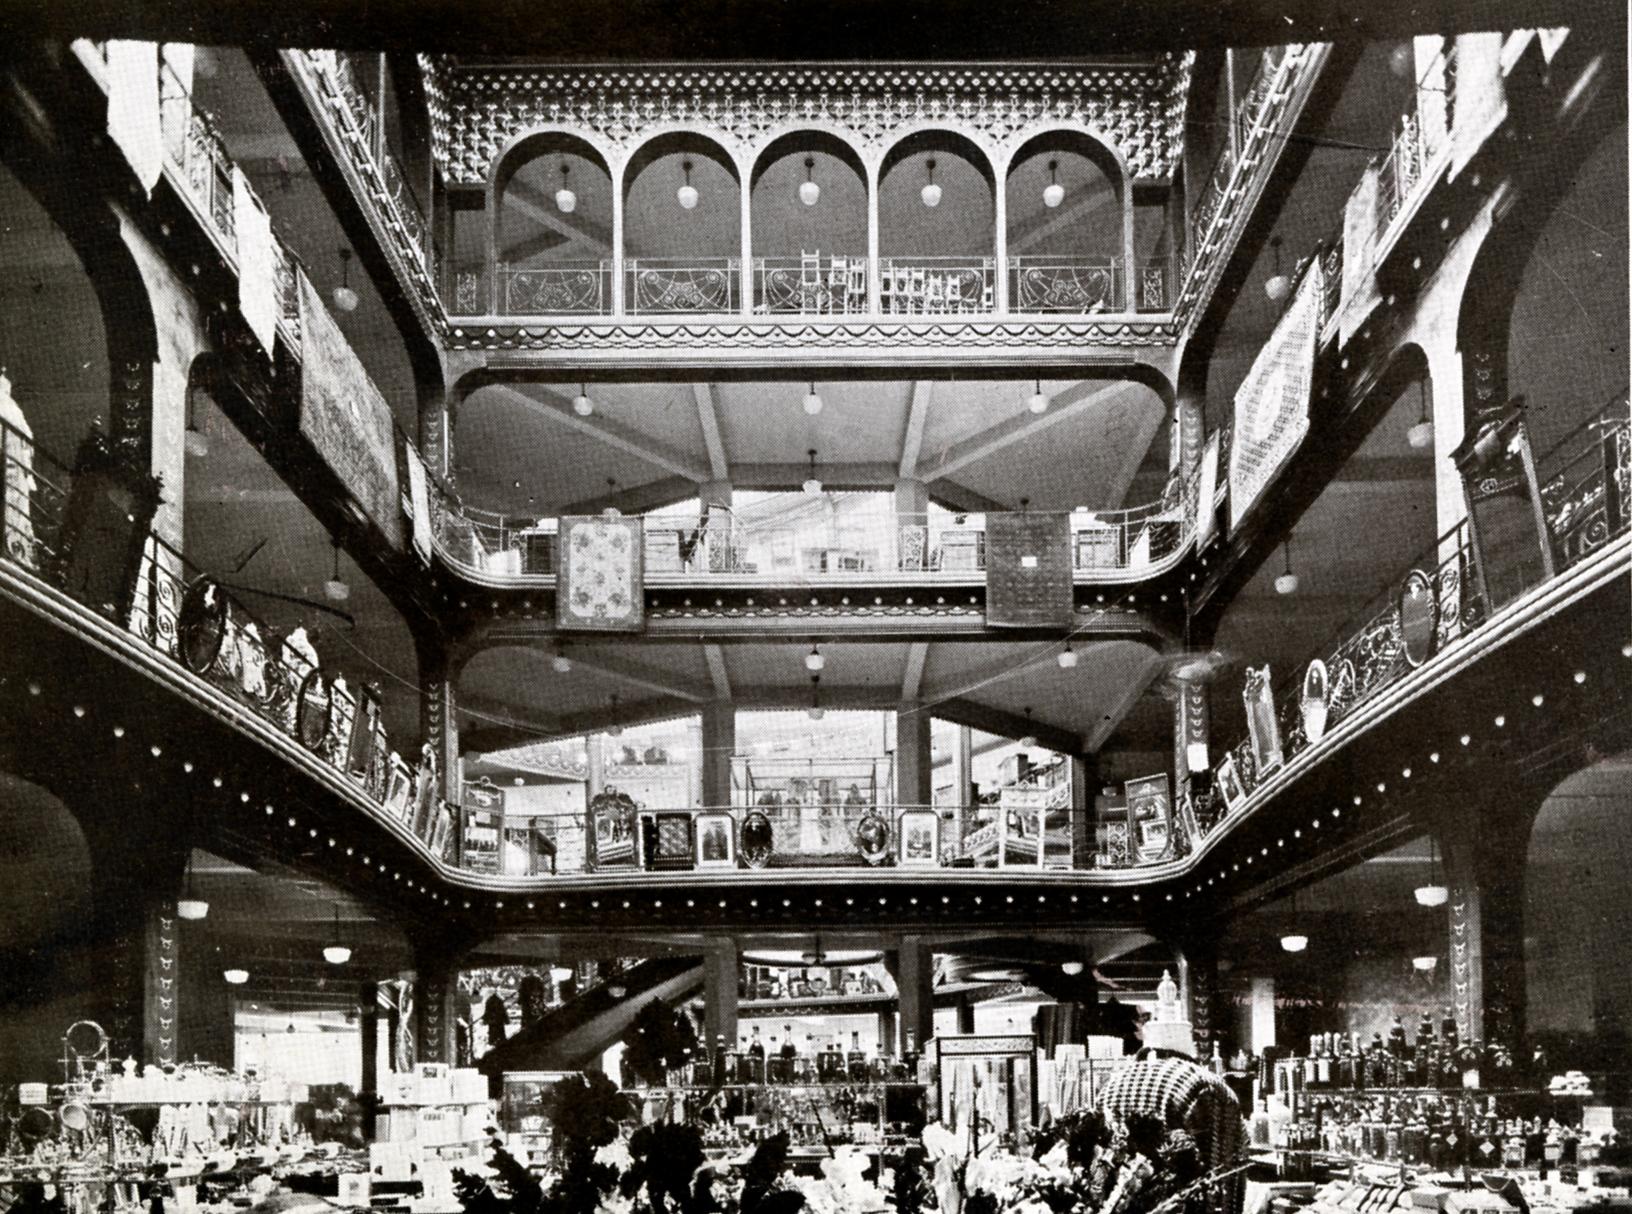 Grand magasin, dit Le Grand Bazar, puis Les Nouvelles Galeries